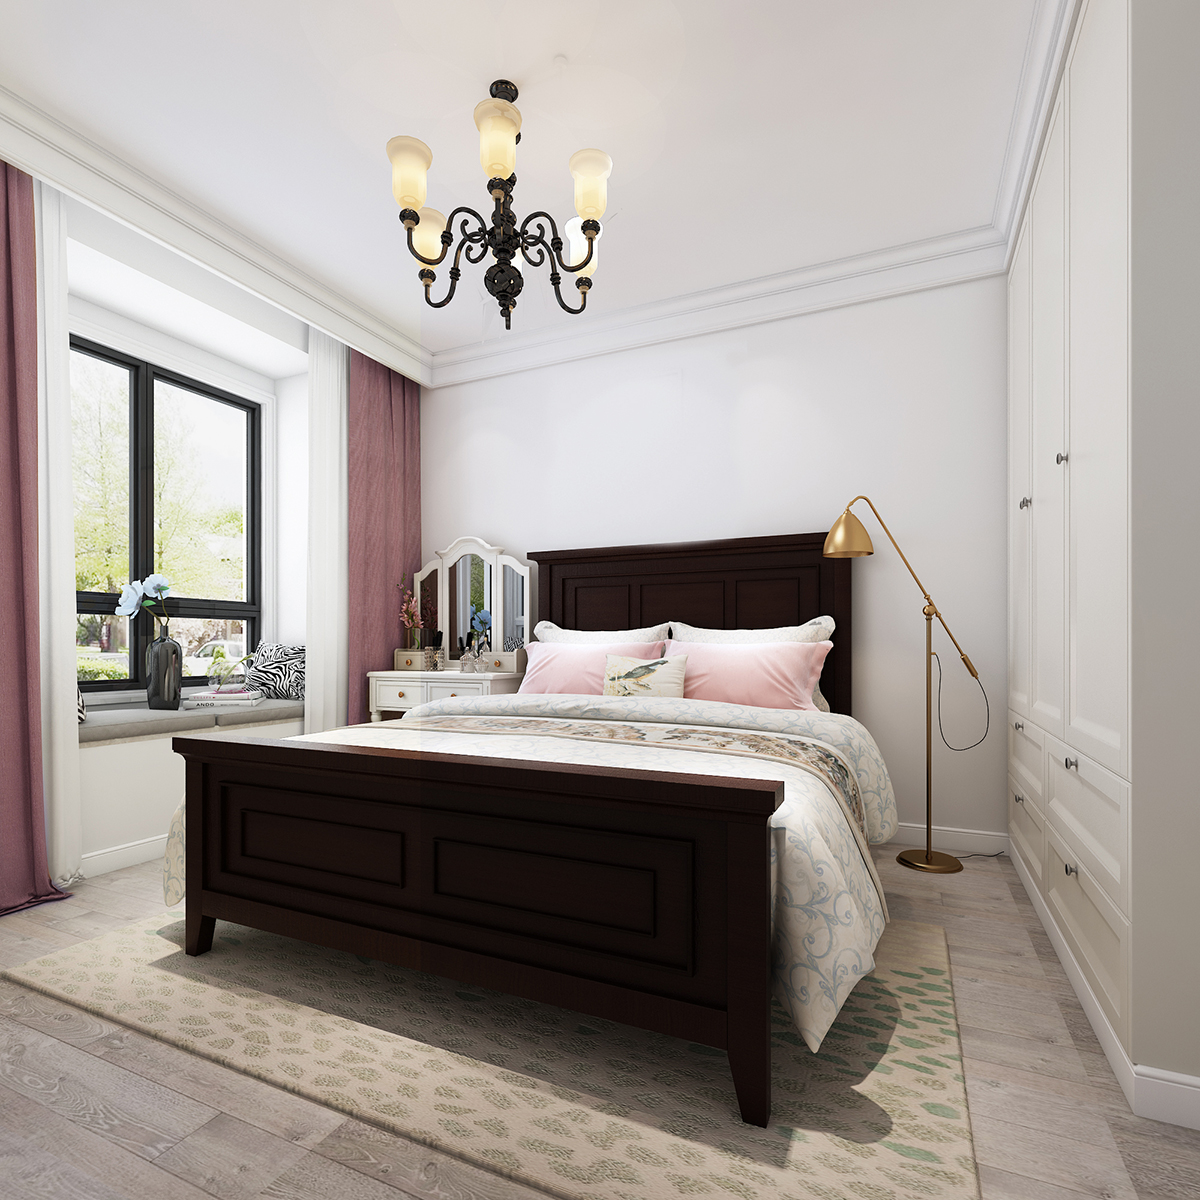 宽敞的卧室不必做过的的摆设,适当的留白反而更能提升空间的质